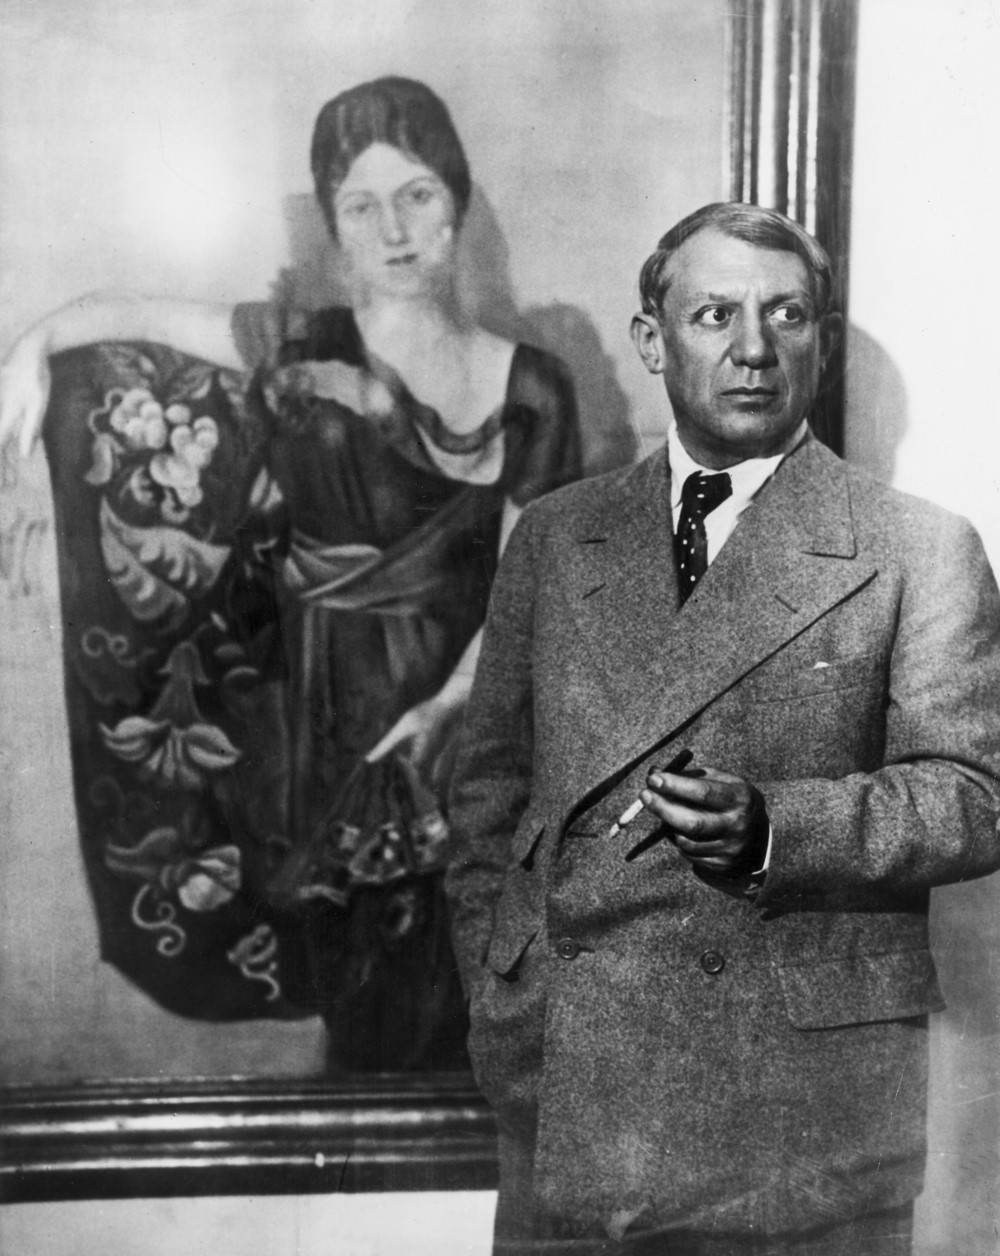 Pikaso ispred portreta supruge Olge Koklove koji je naslikao